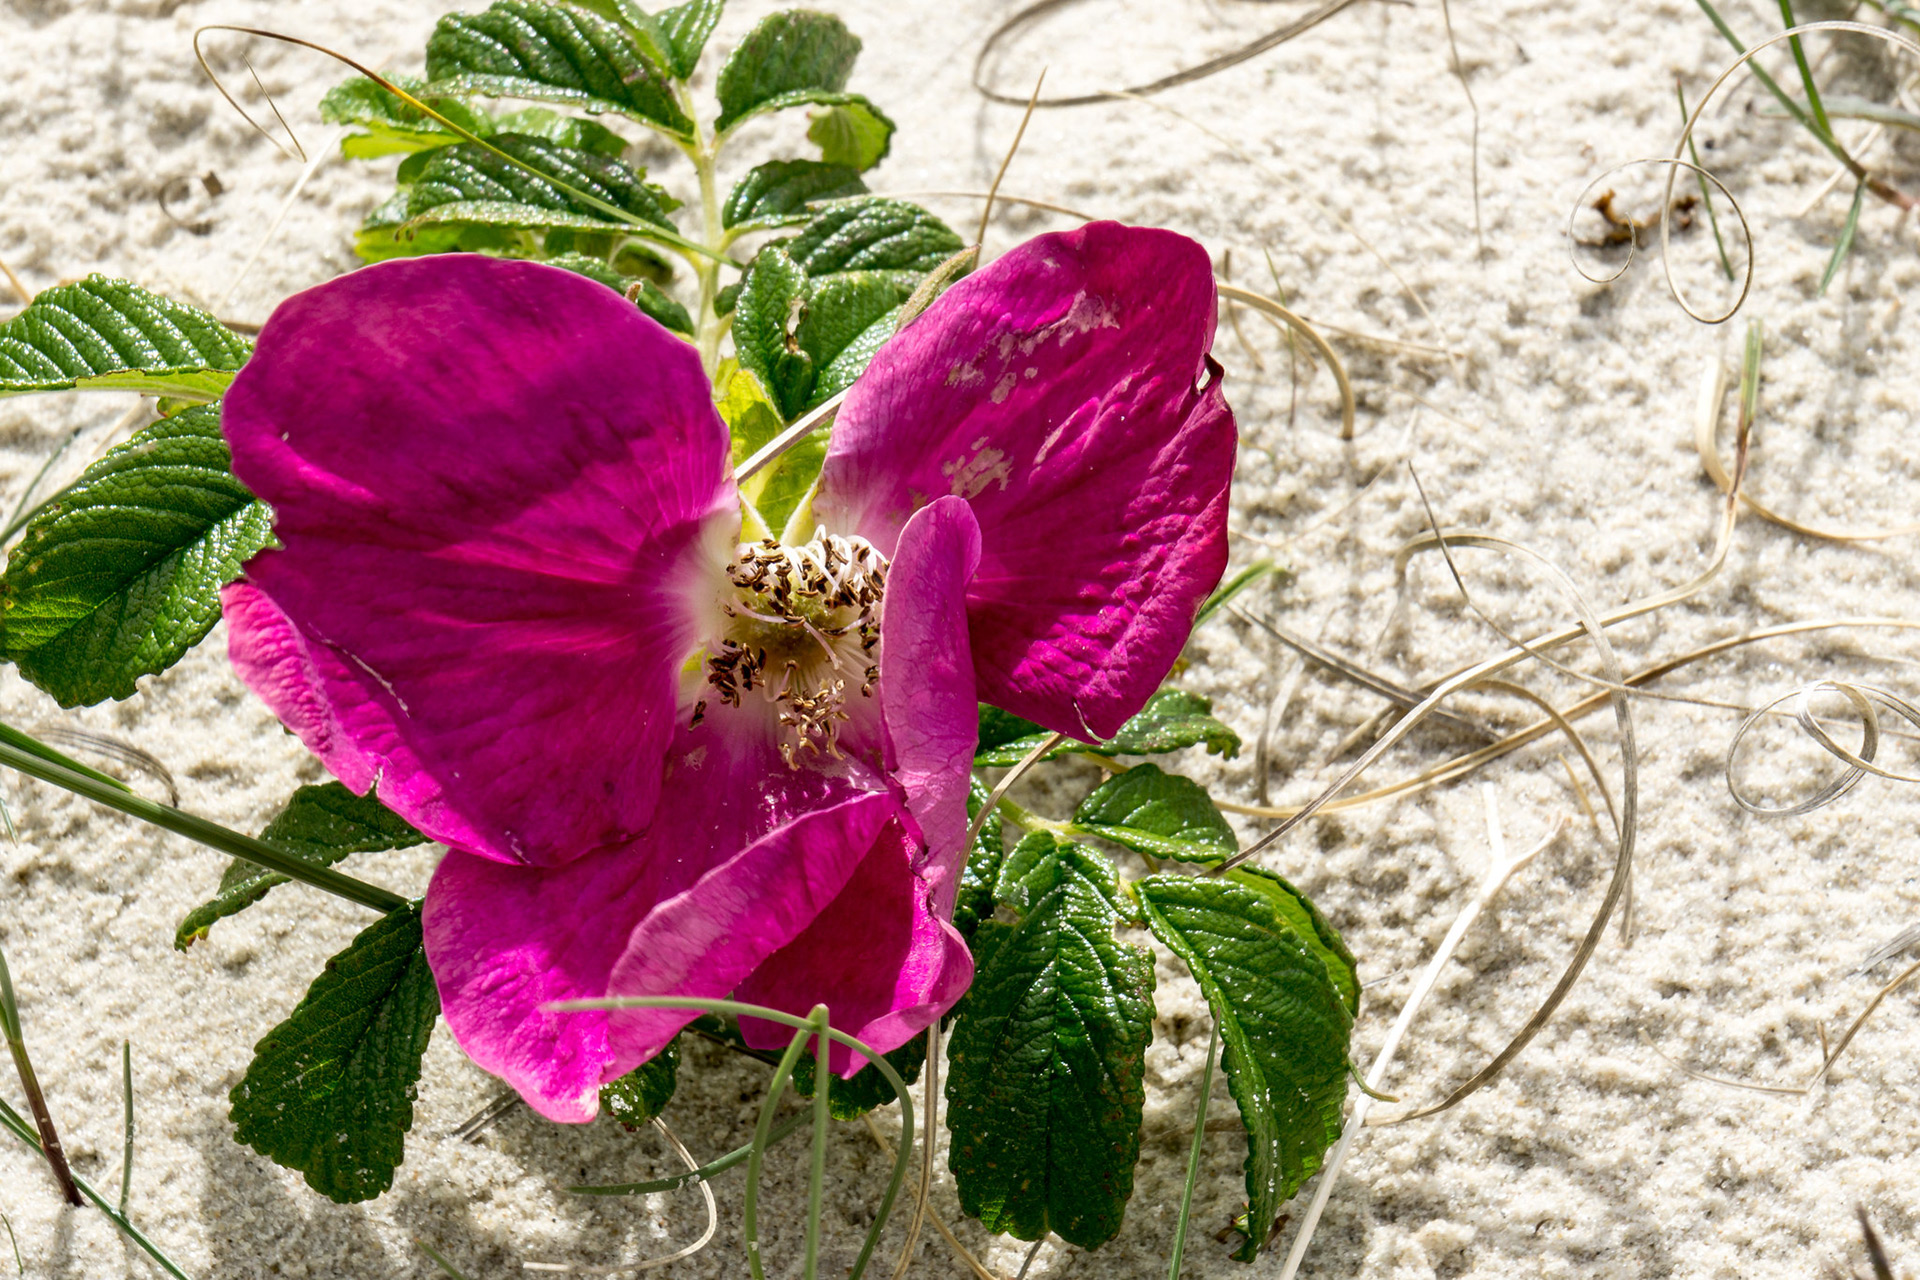 Eine lila Blüte an einer grünen Pflanze, die auf Sand wächst.